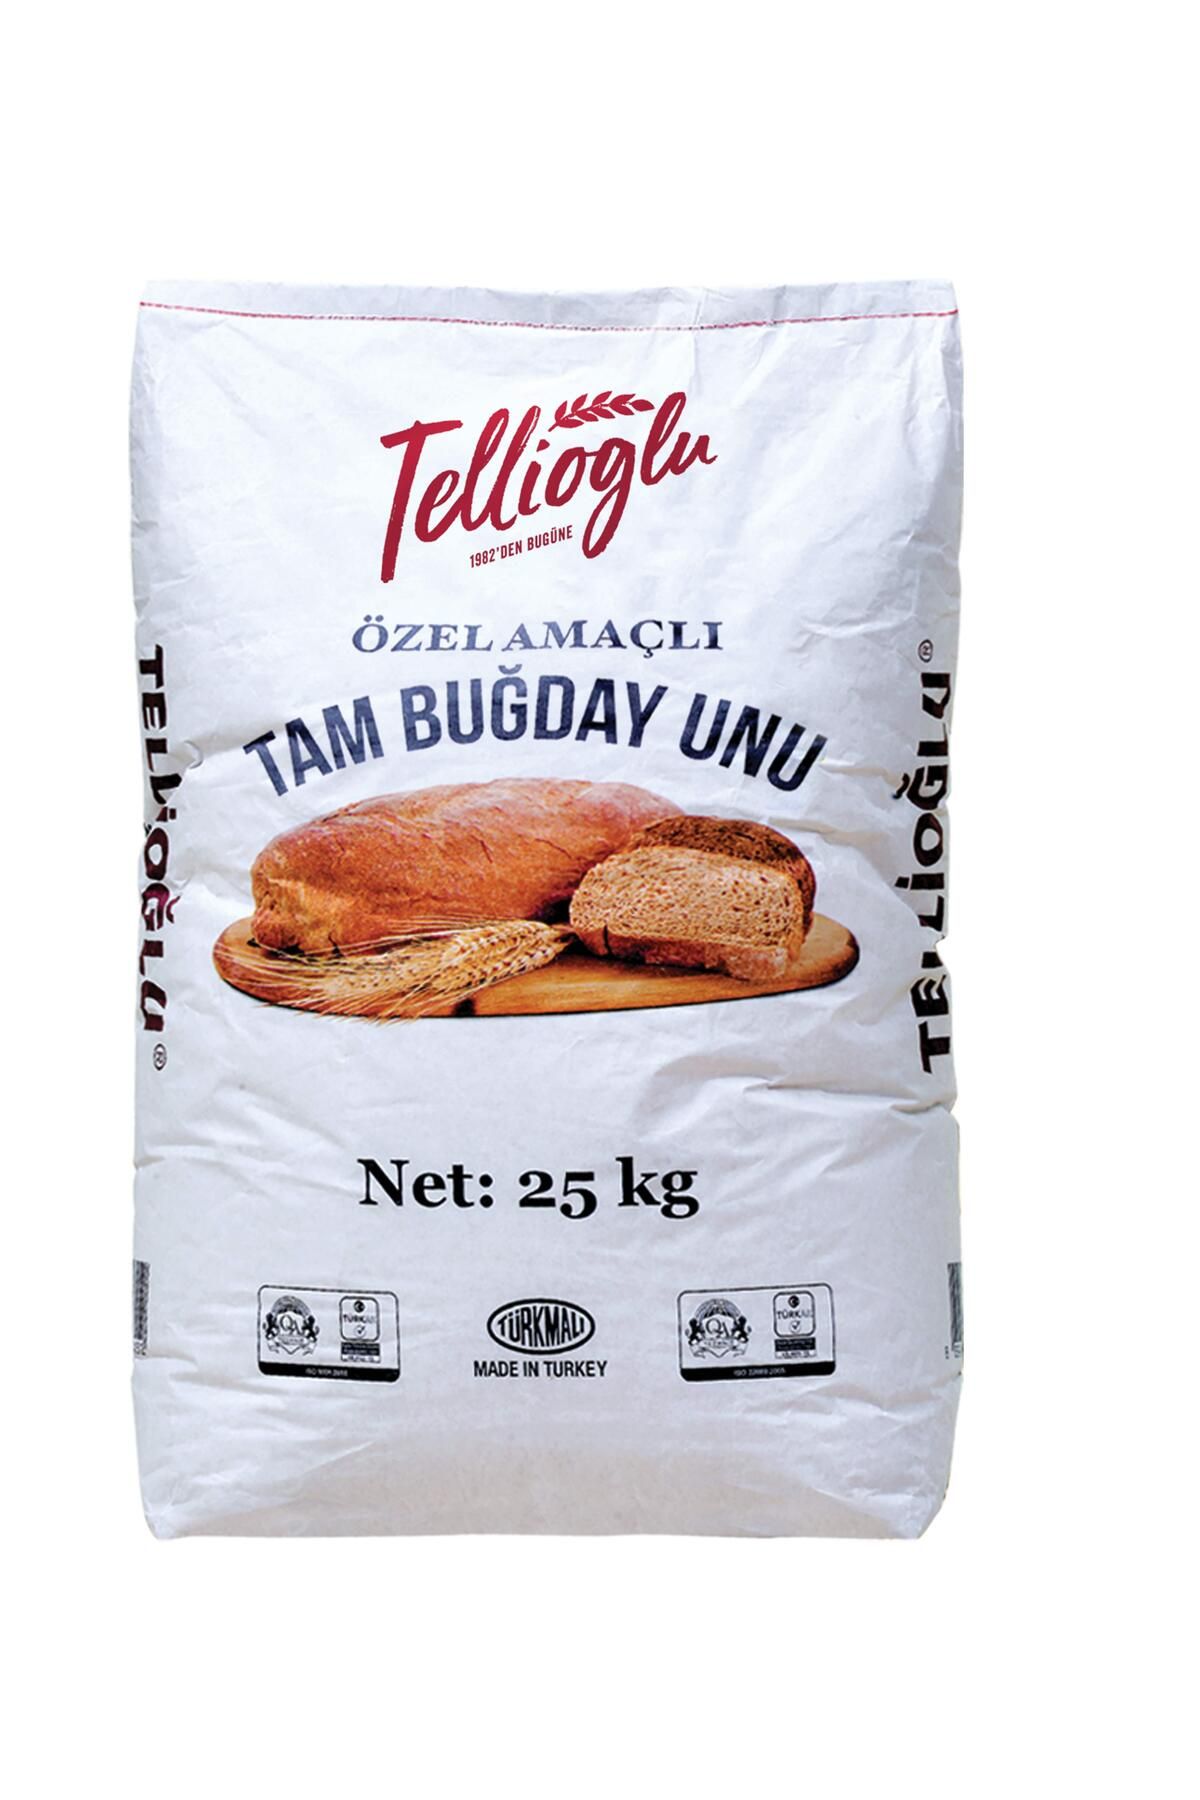 tellioğlu Ekşi Mayalı Ekmek Yapımına Özel Buğday Unu 5kg Fiyatı, Yorumları  - Trendyol